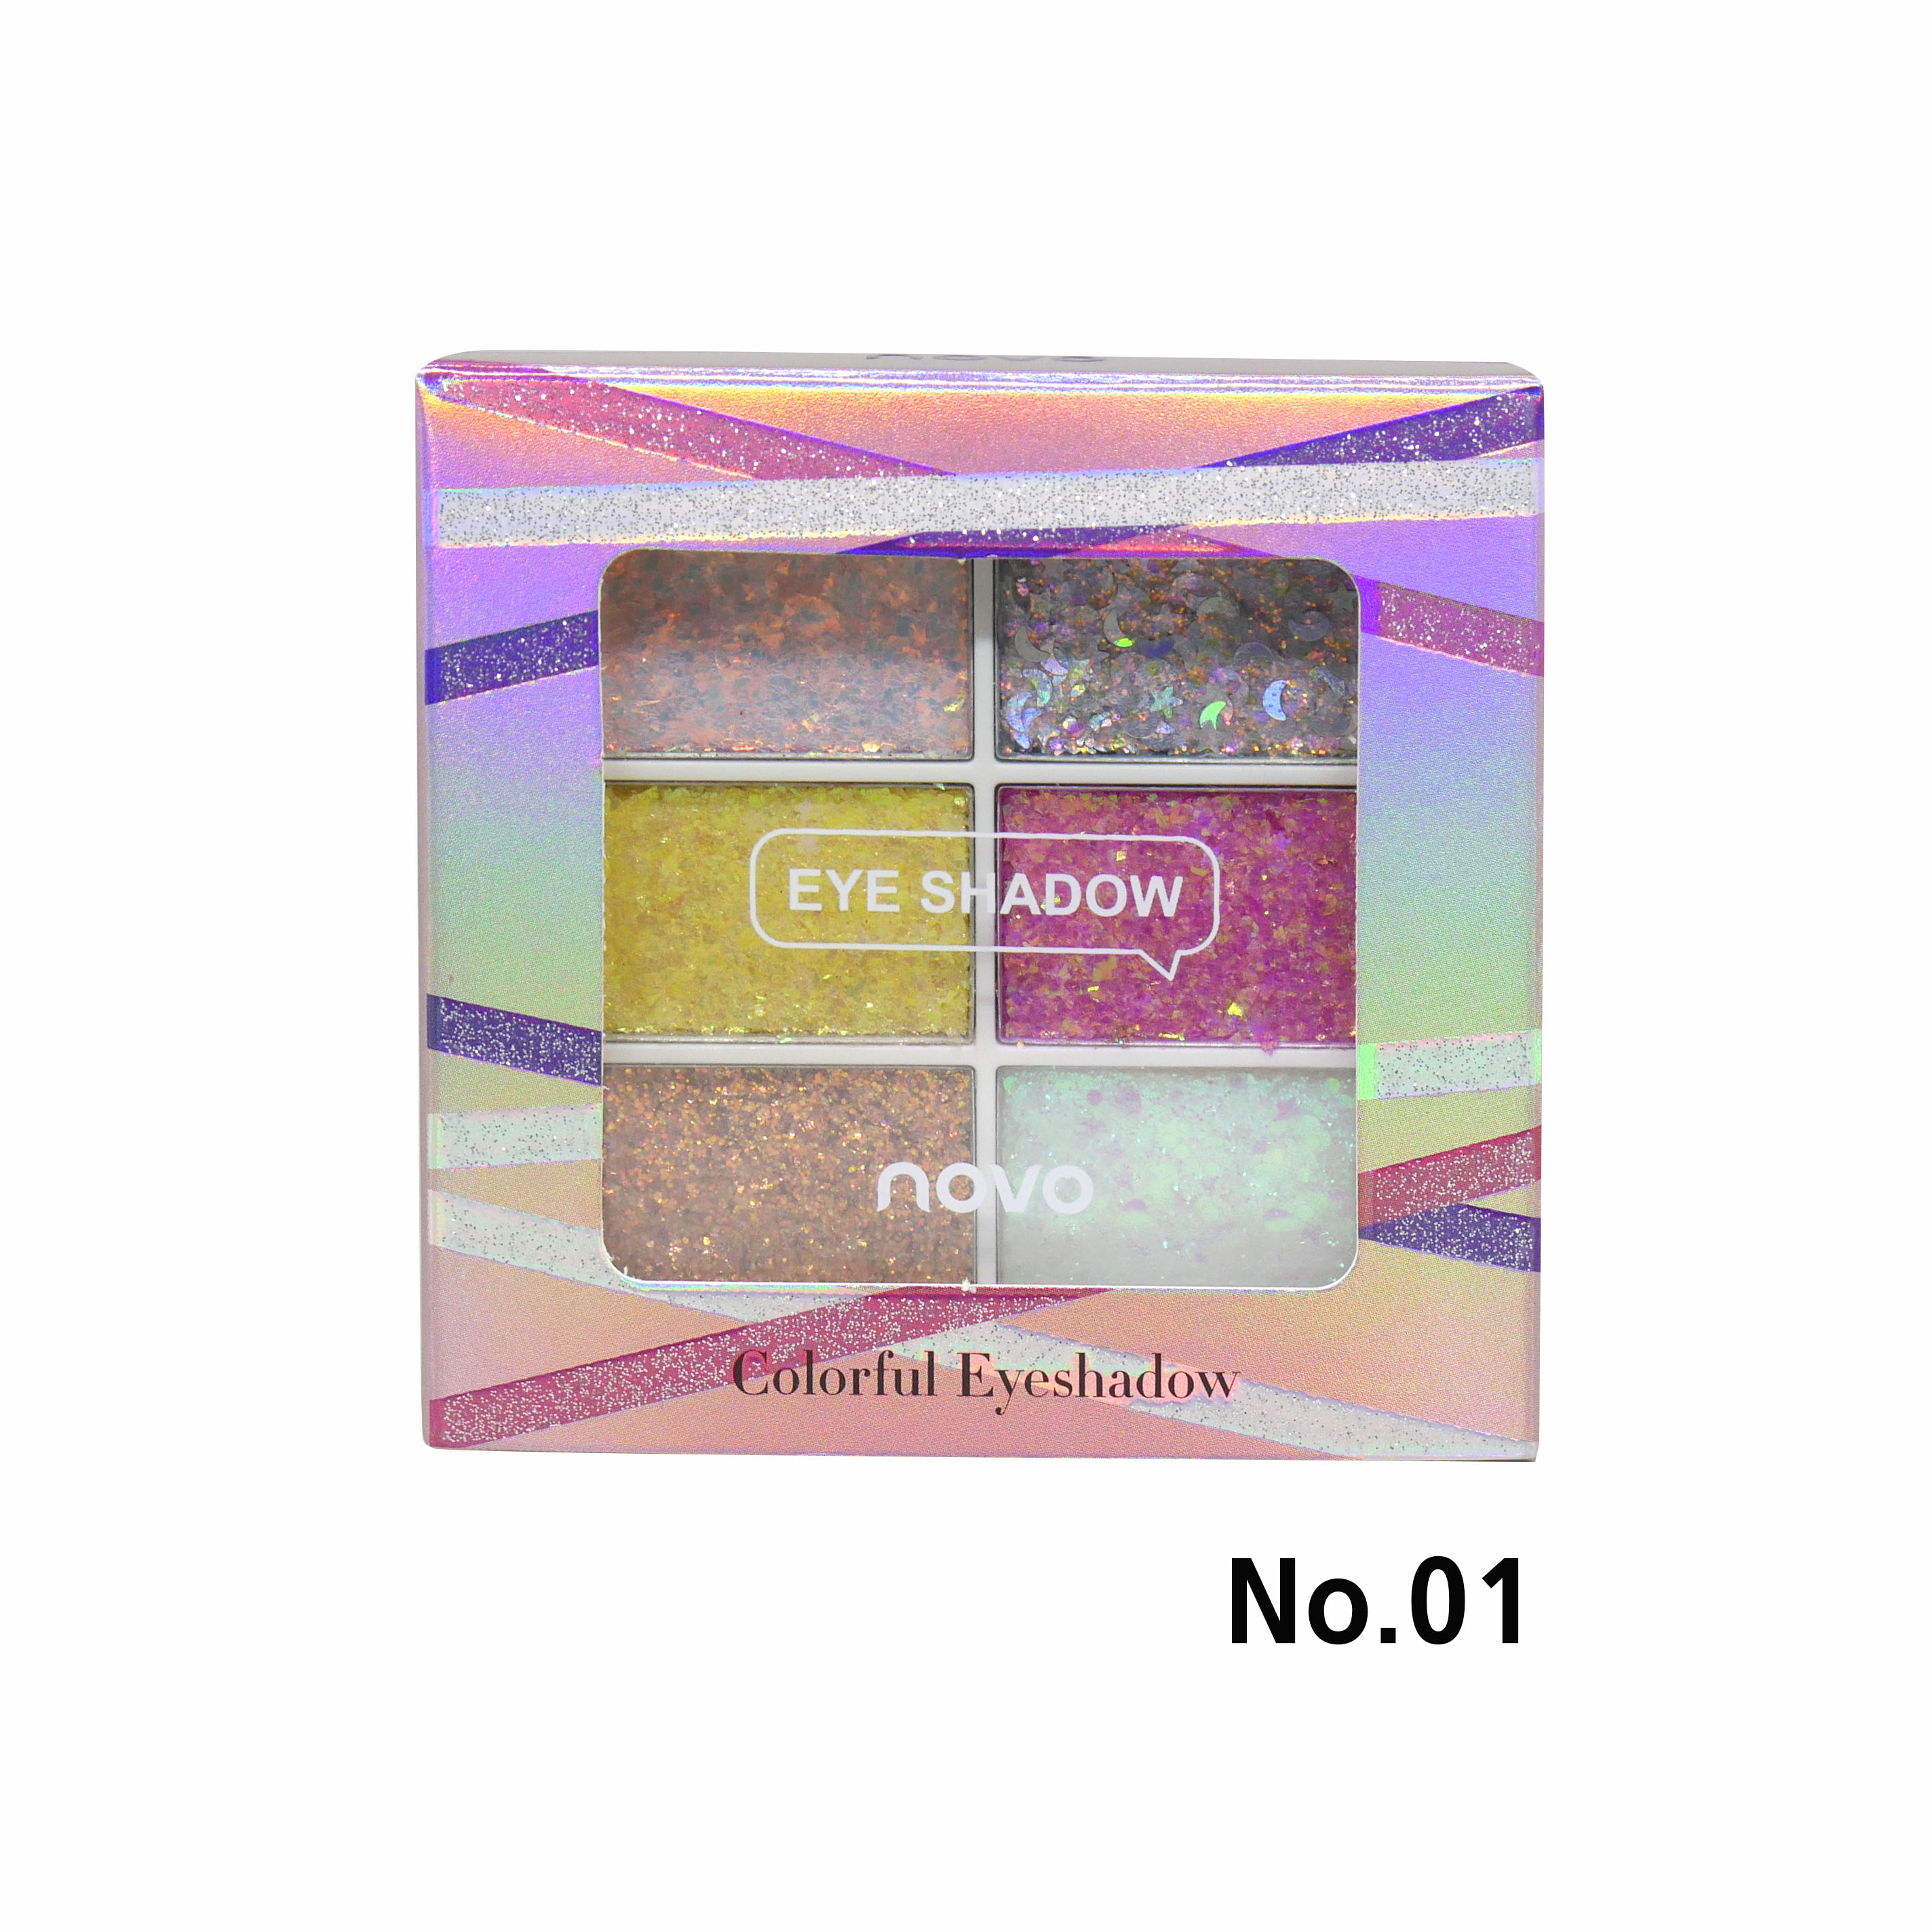 NOVO Colorful Eyeshadow No.01 ราคาส่งถูกๆ W.75 รหัส ES412-1